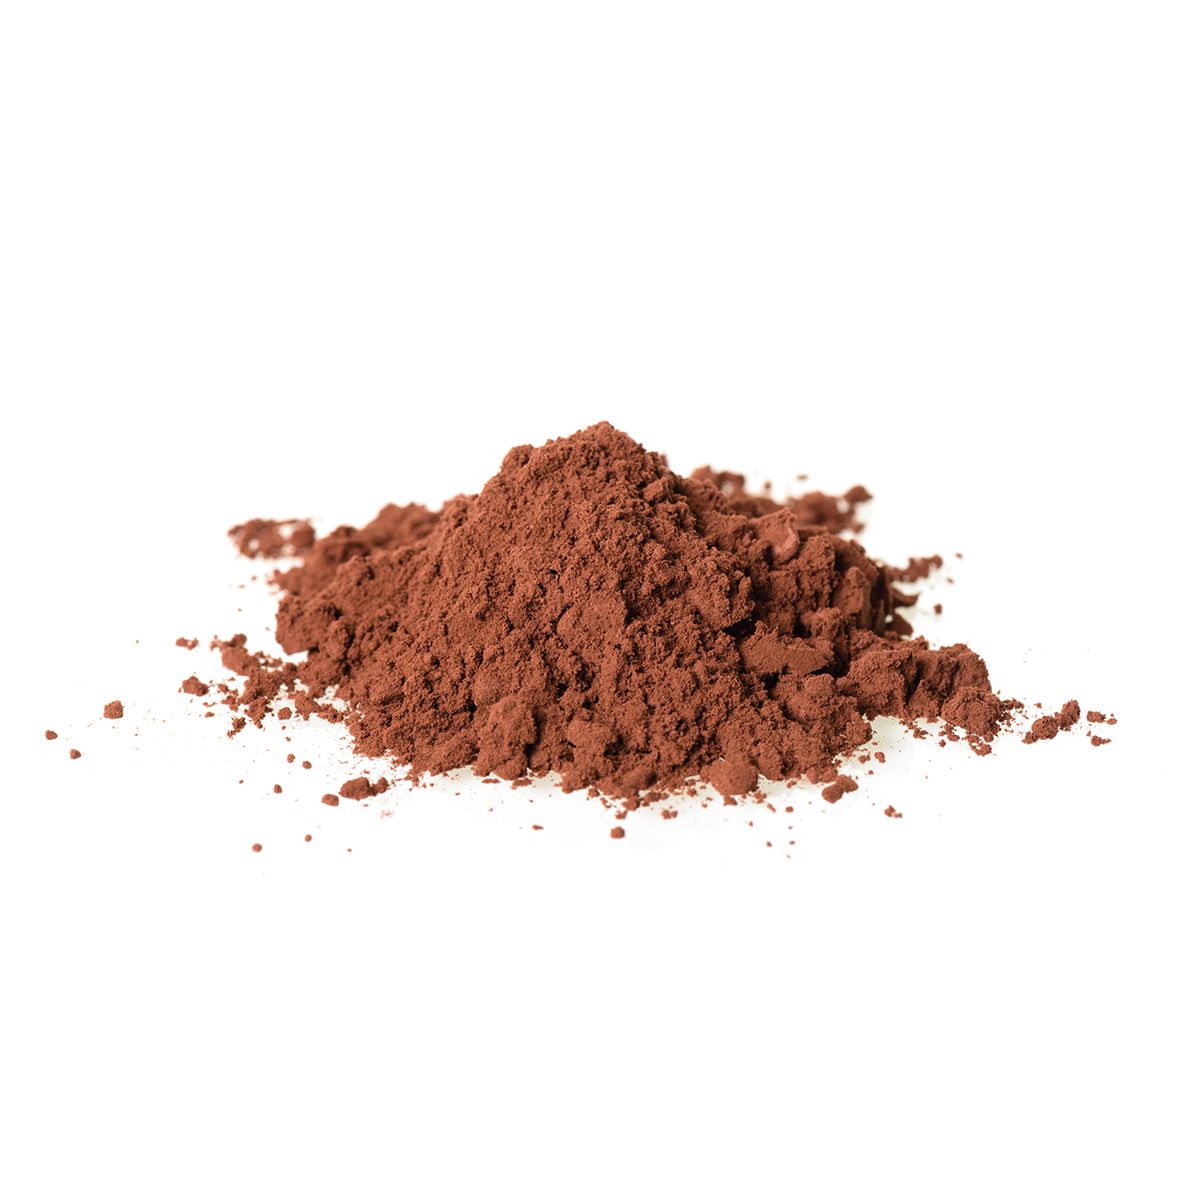 Valrhona Cocoa Powder